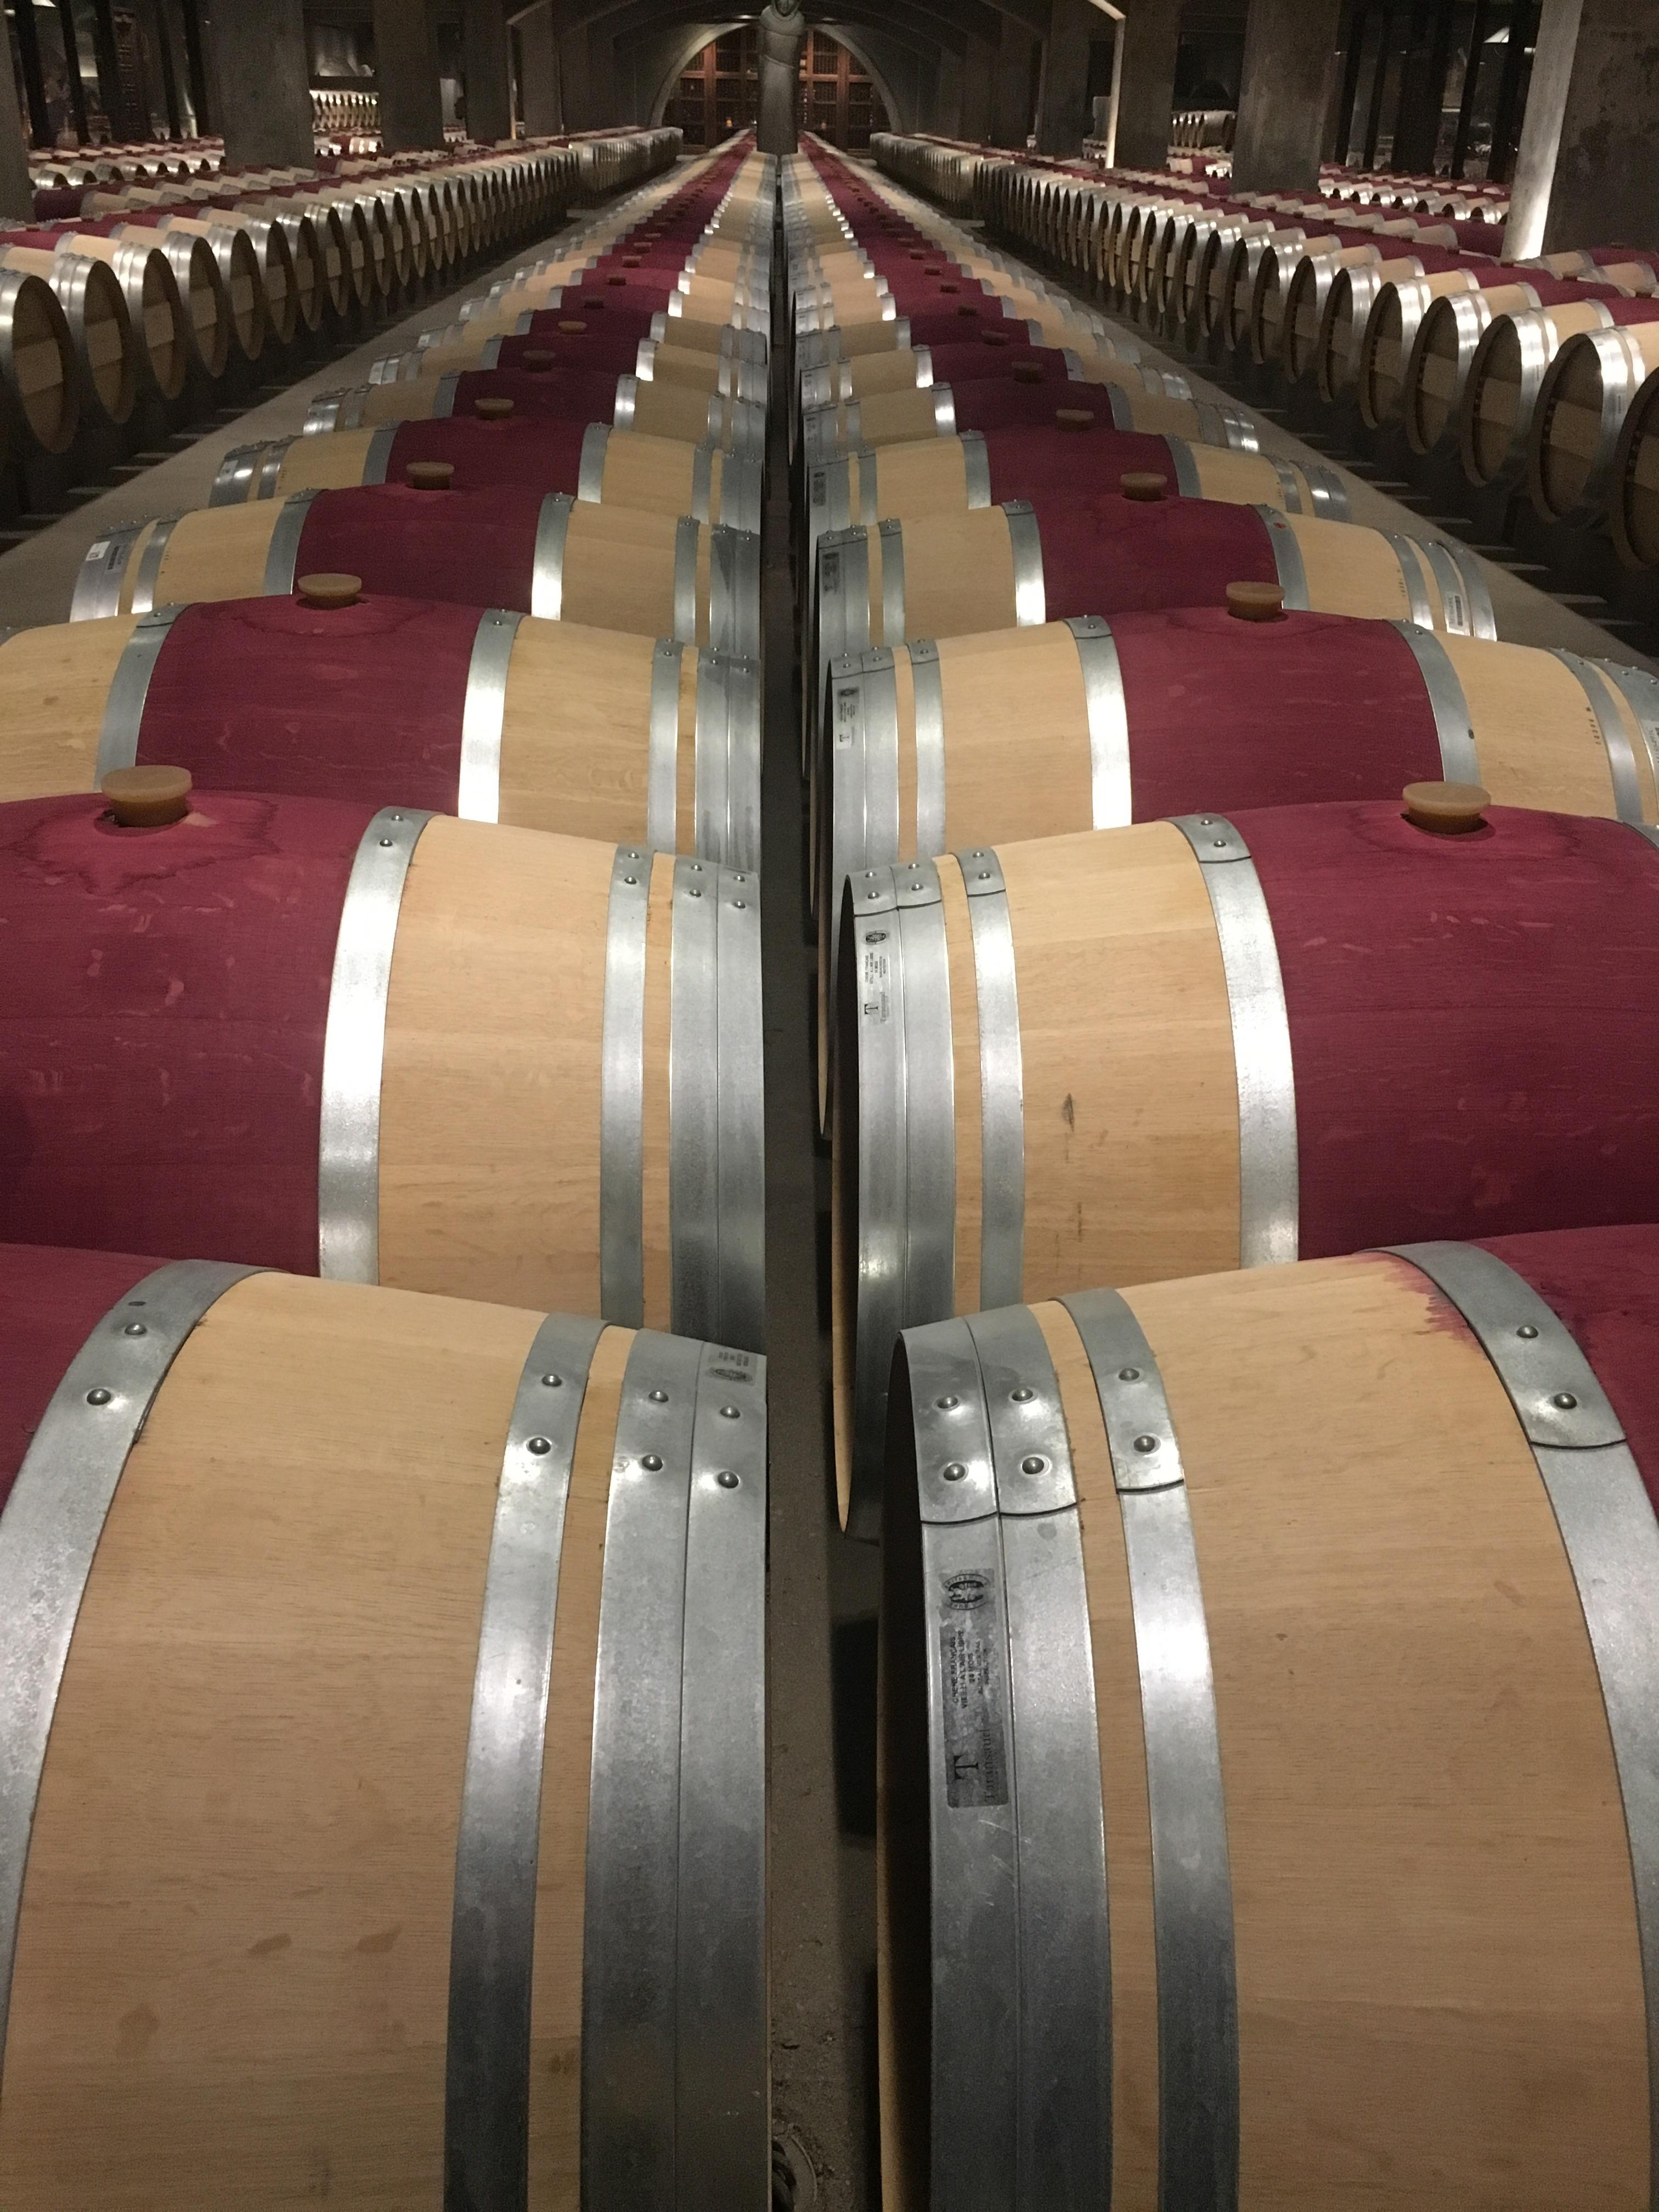 Barrels and barrels of wine. Smart Phone Wallpaper